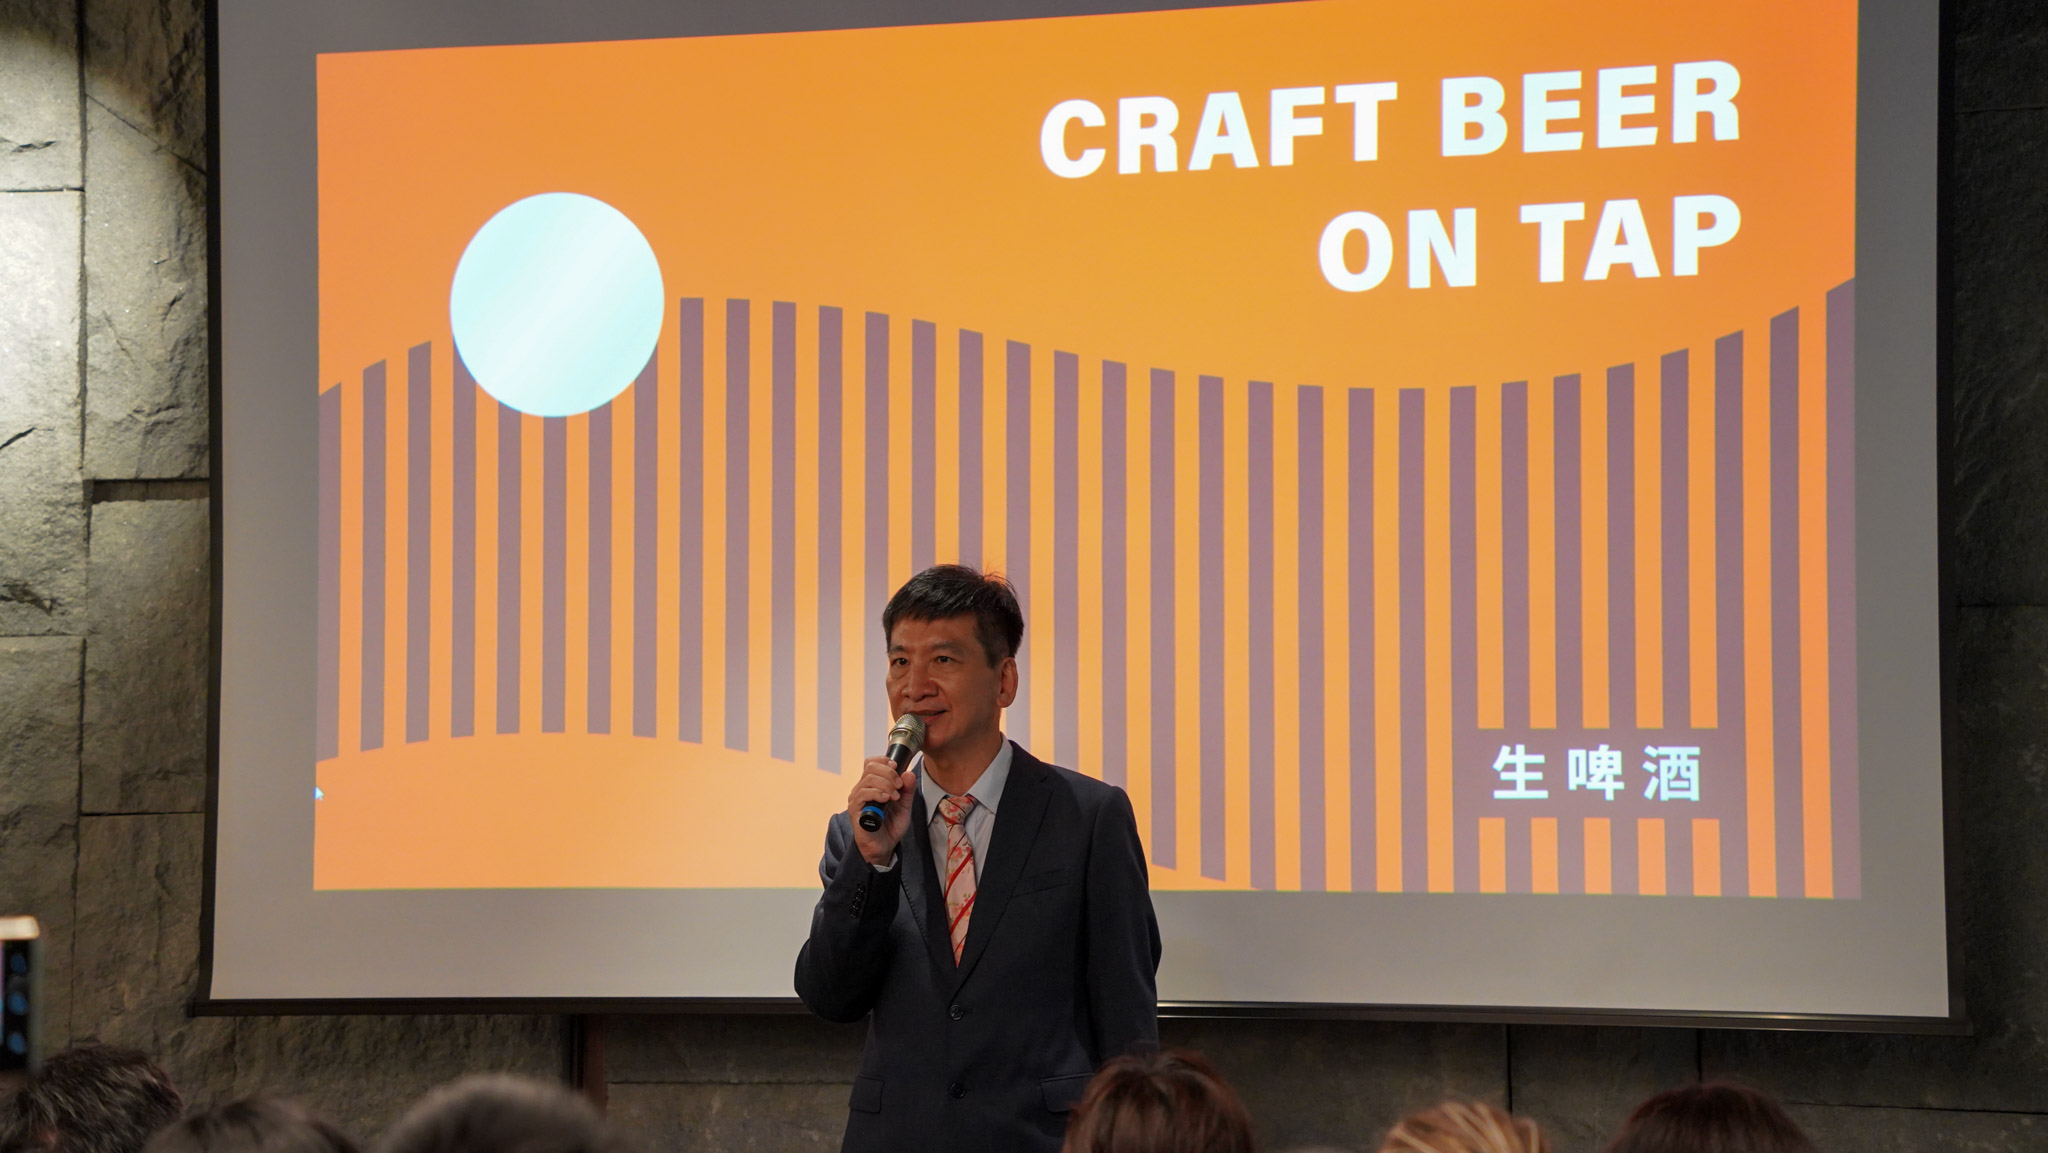 啤酒頭釀造董事長葉燦昇表示，酒廠結合生產、觀光、教育三重目標，藉由開放啤酒生產線與導覽解說，向大眾推廣啤酒文化與釀造科學。